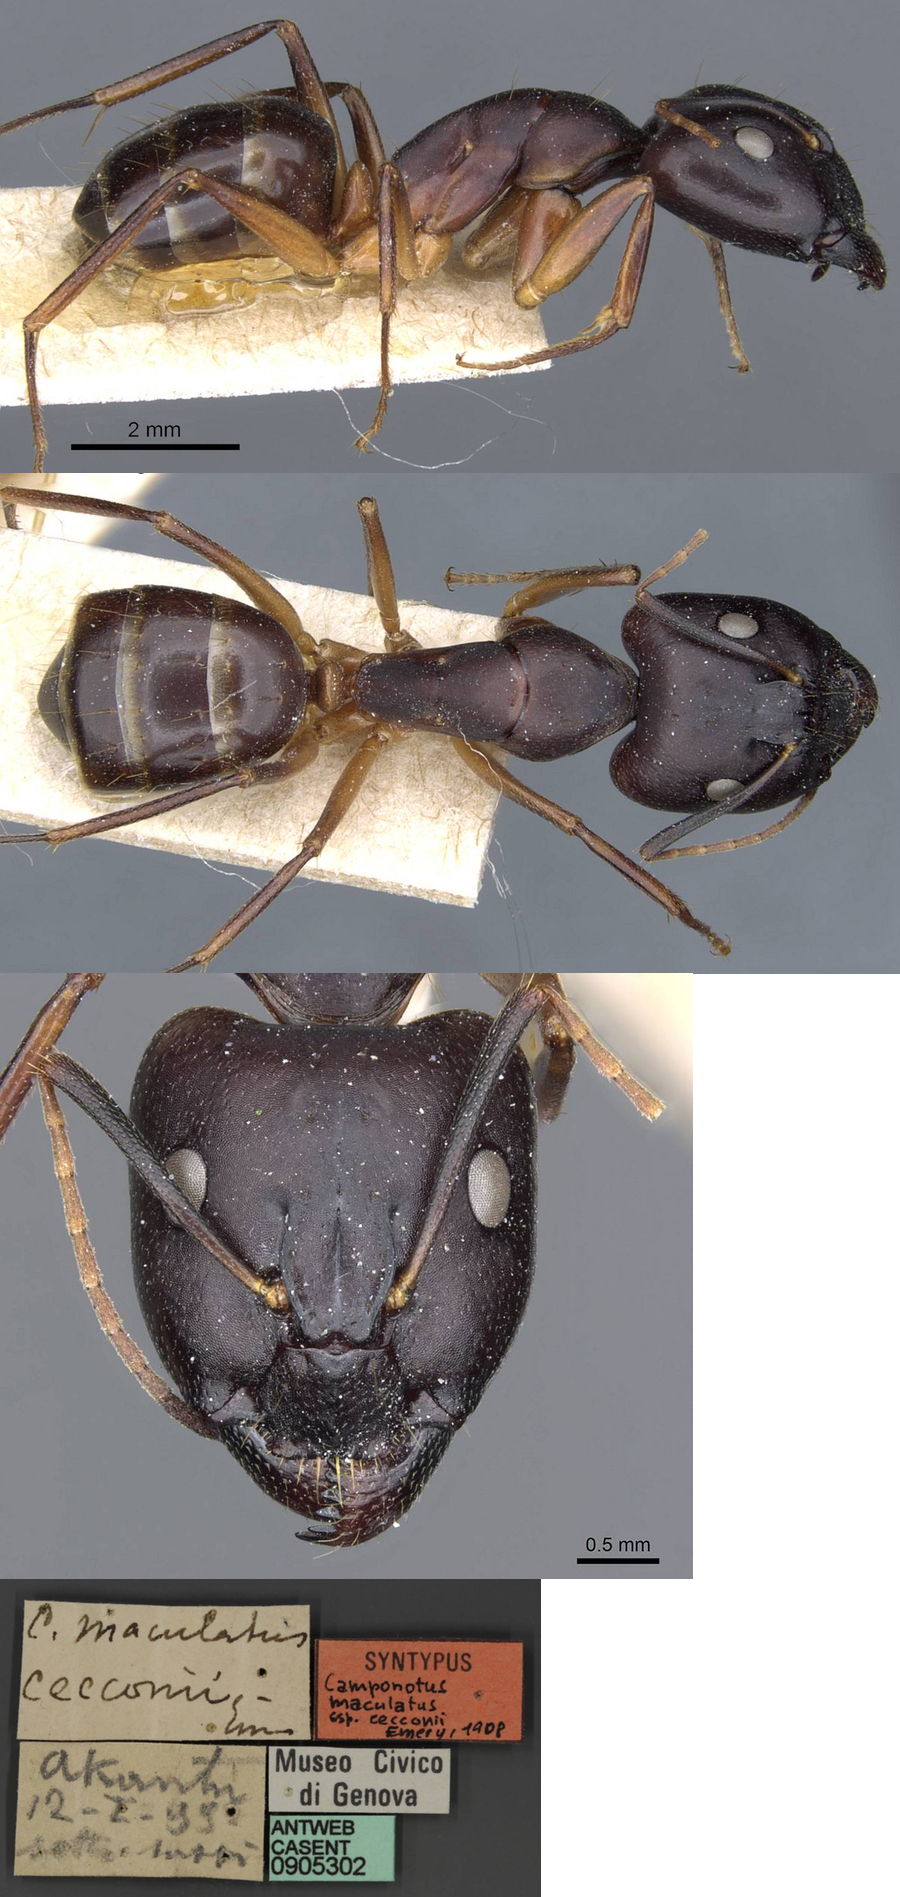 Camponotus cecconii major